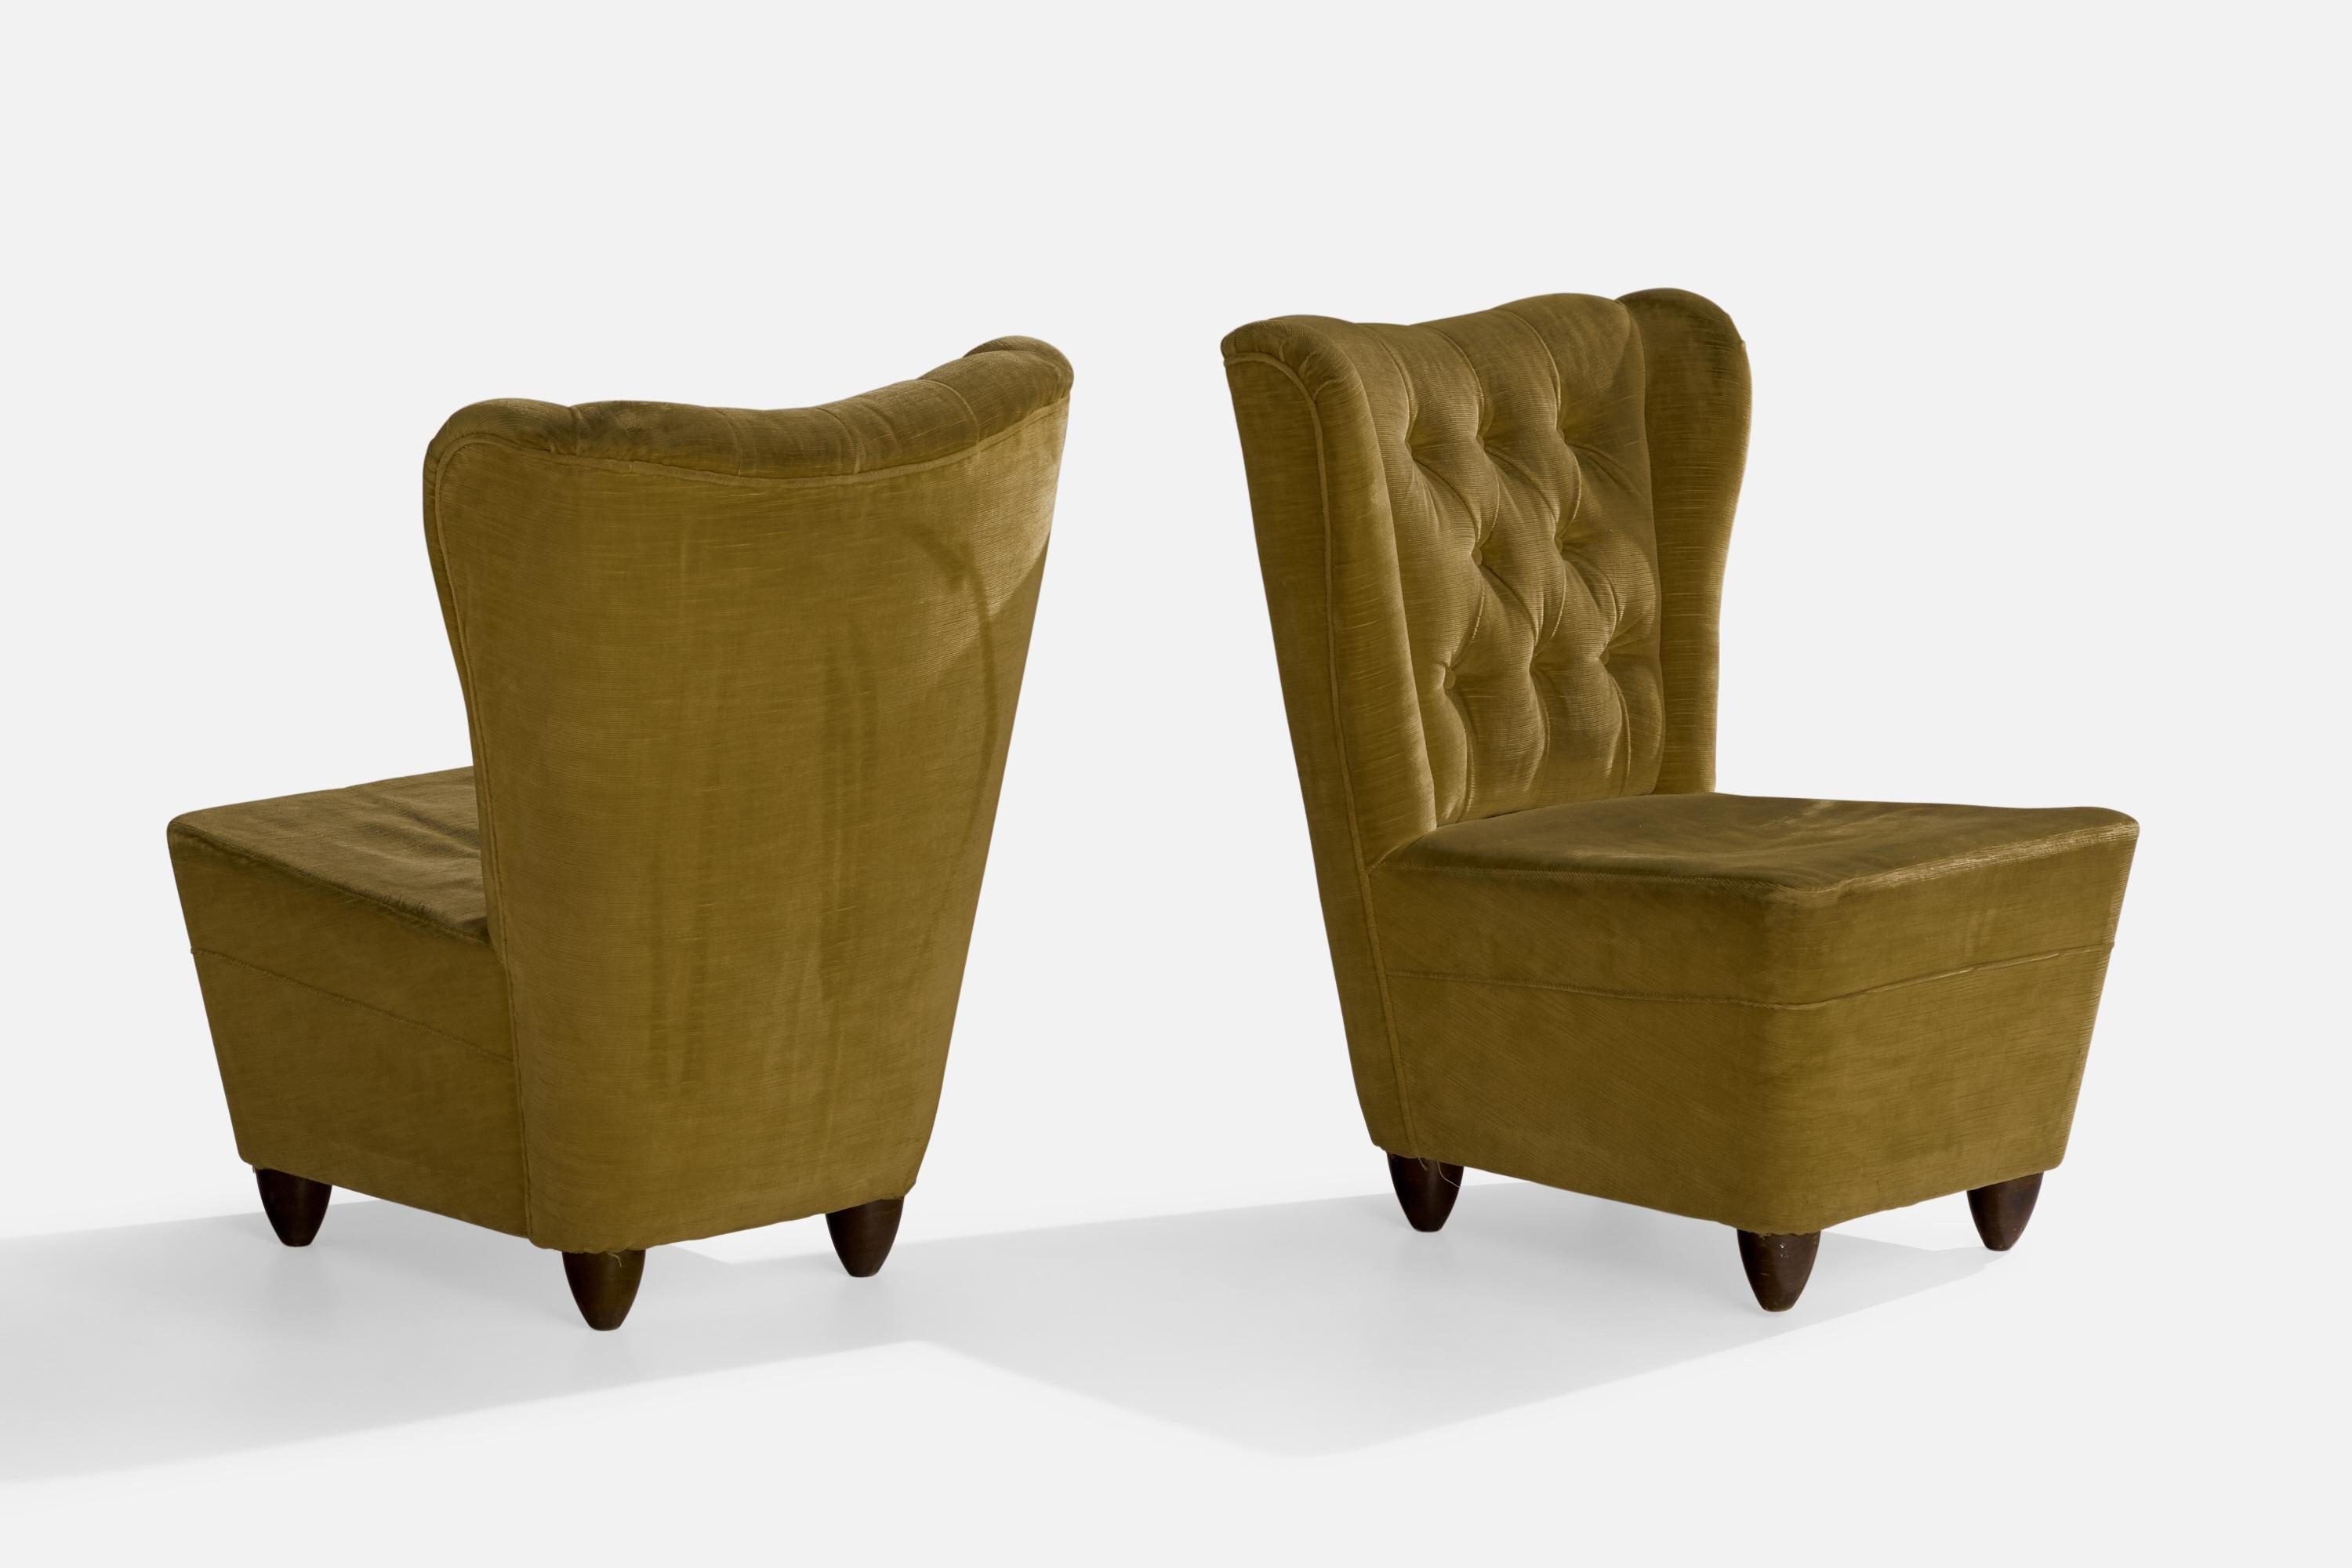 Mid-20th Century Italian Designer, Slipper Chairs, Velvet, Wood, Italy, 1940s For Sale